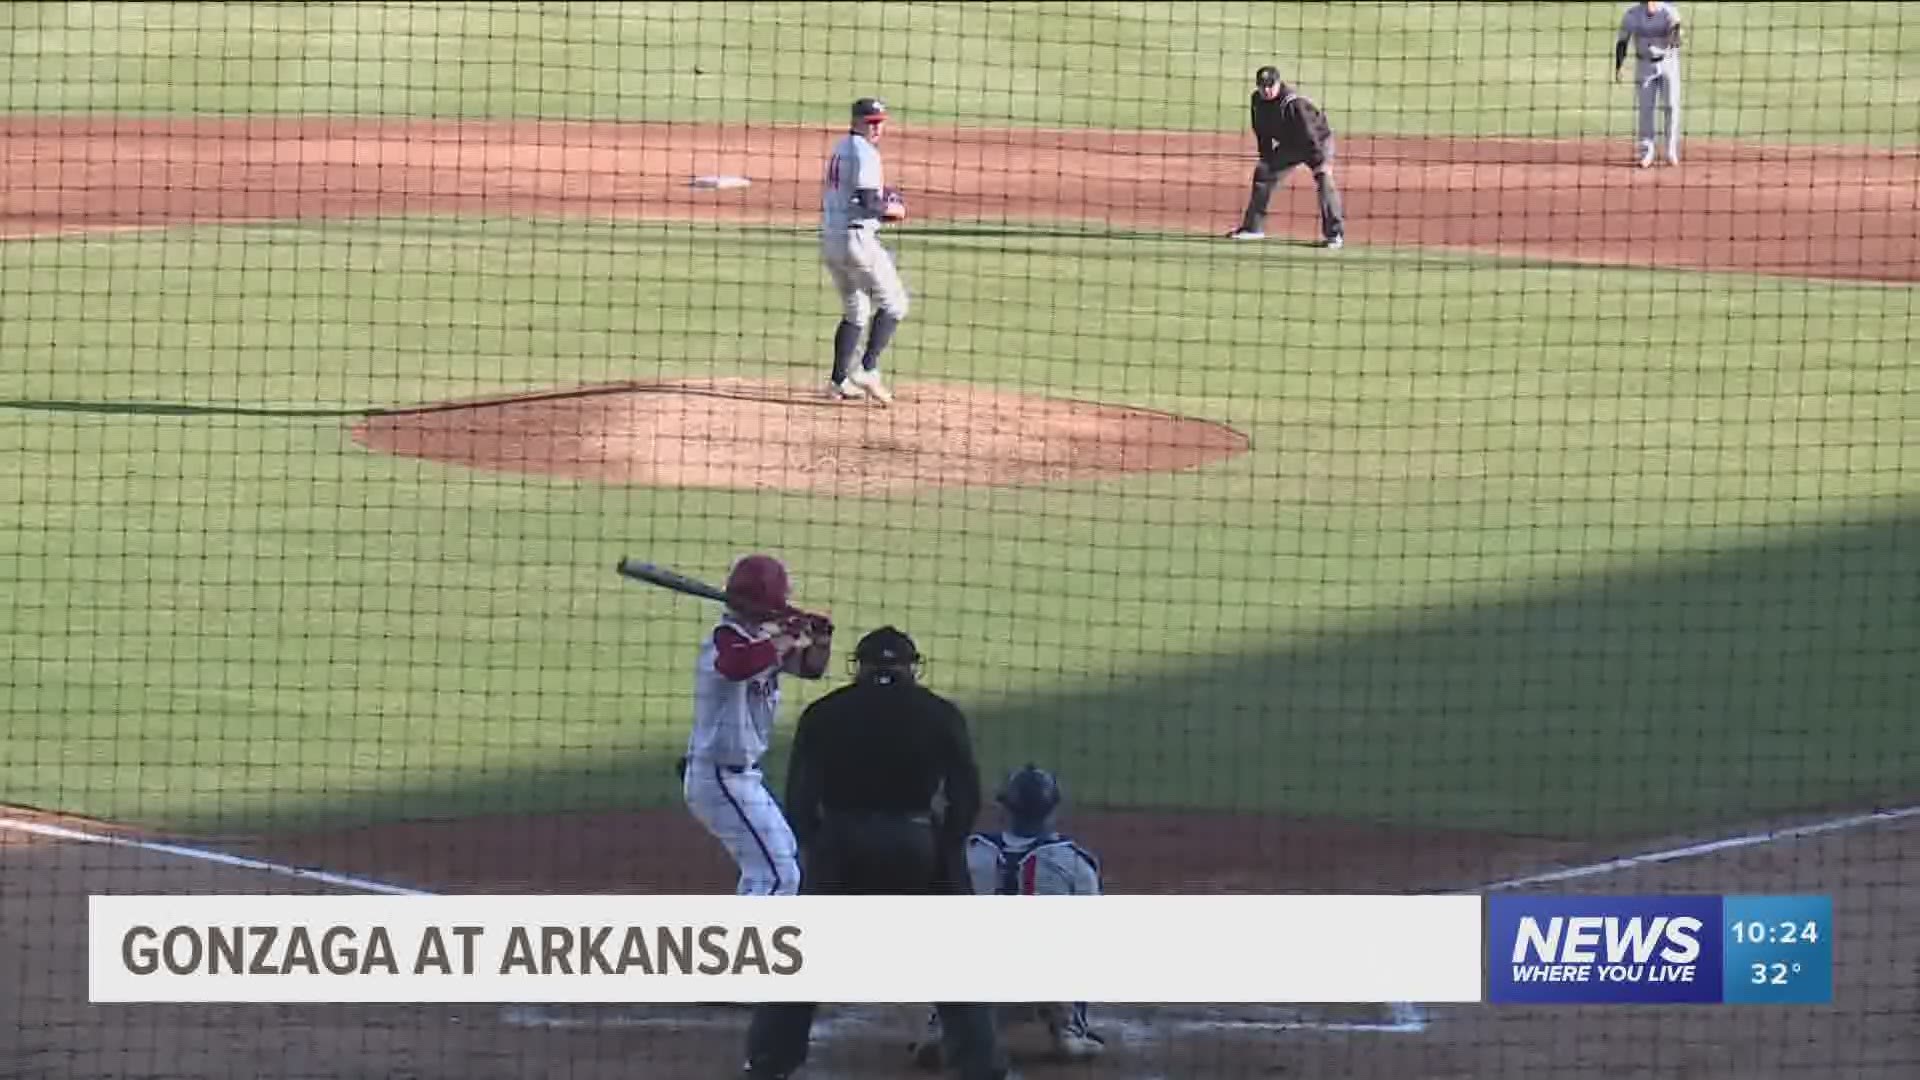 Gonzaga at Arkansas baseball